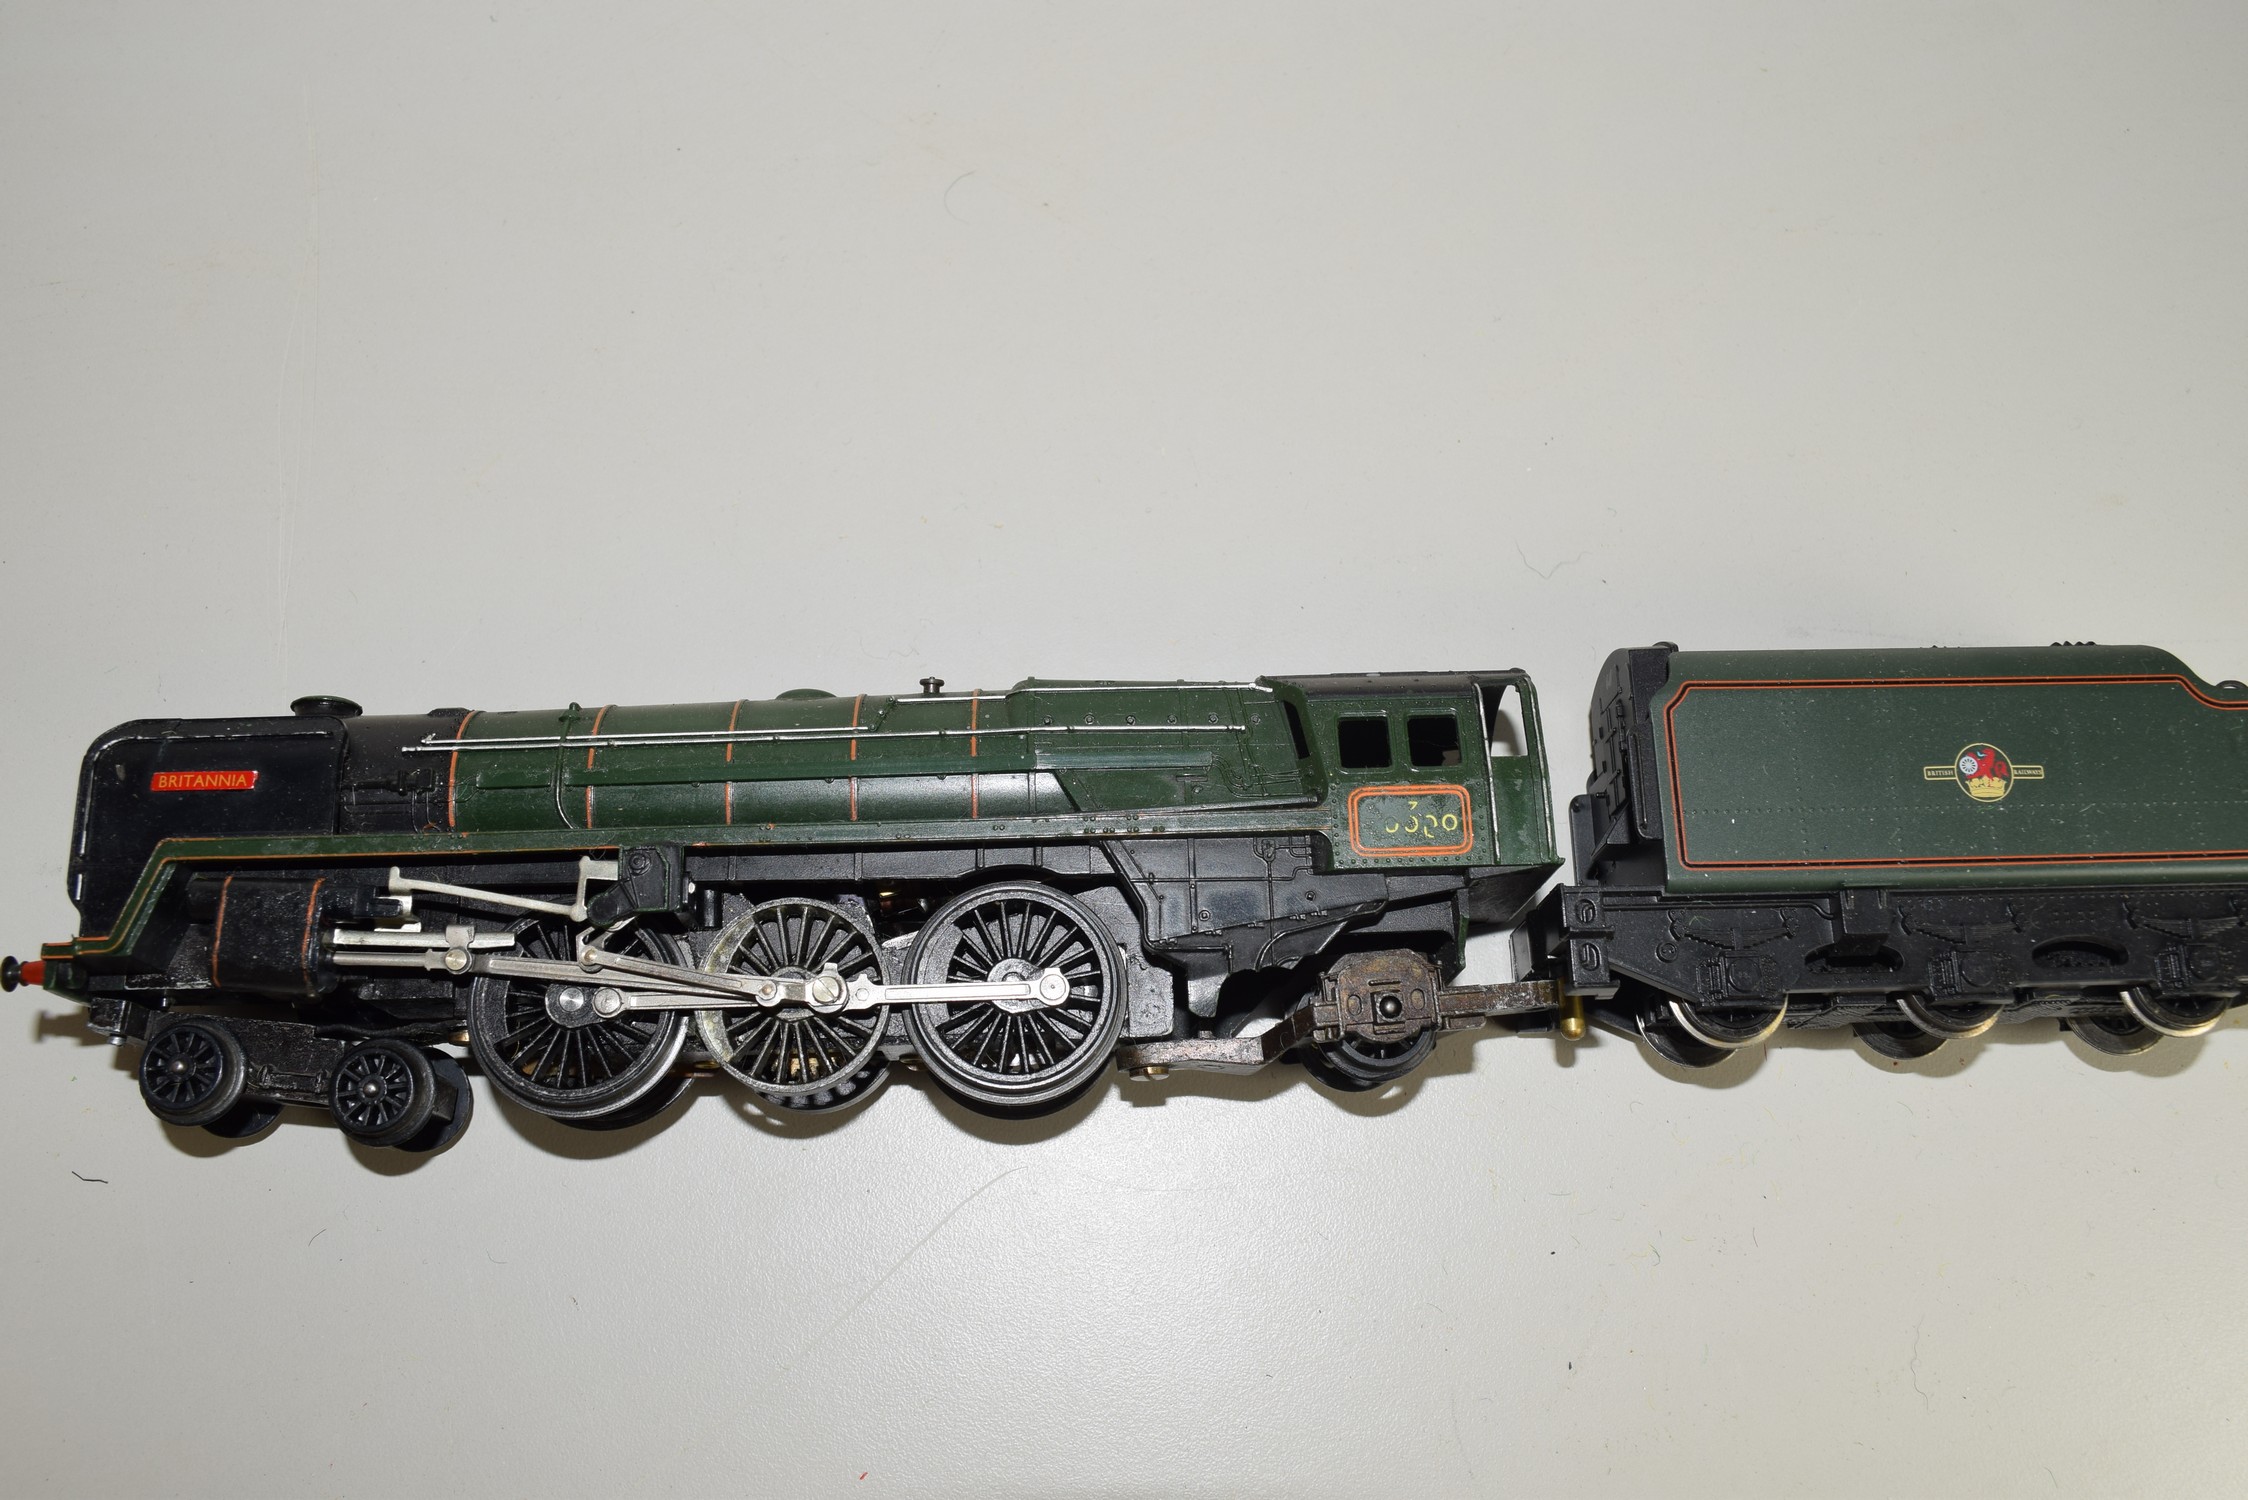 Unboxed Triang 00 gauge R259 "Britannia" locomotive